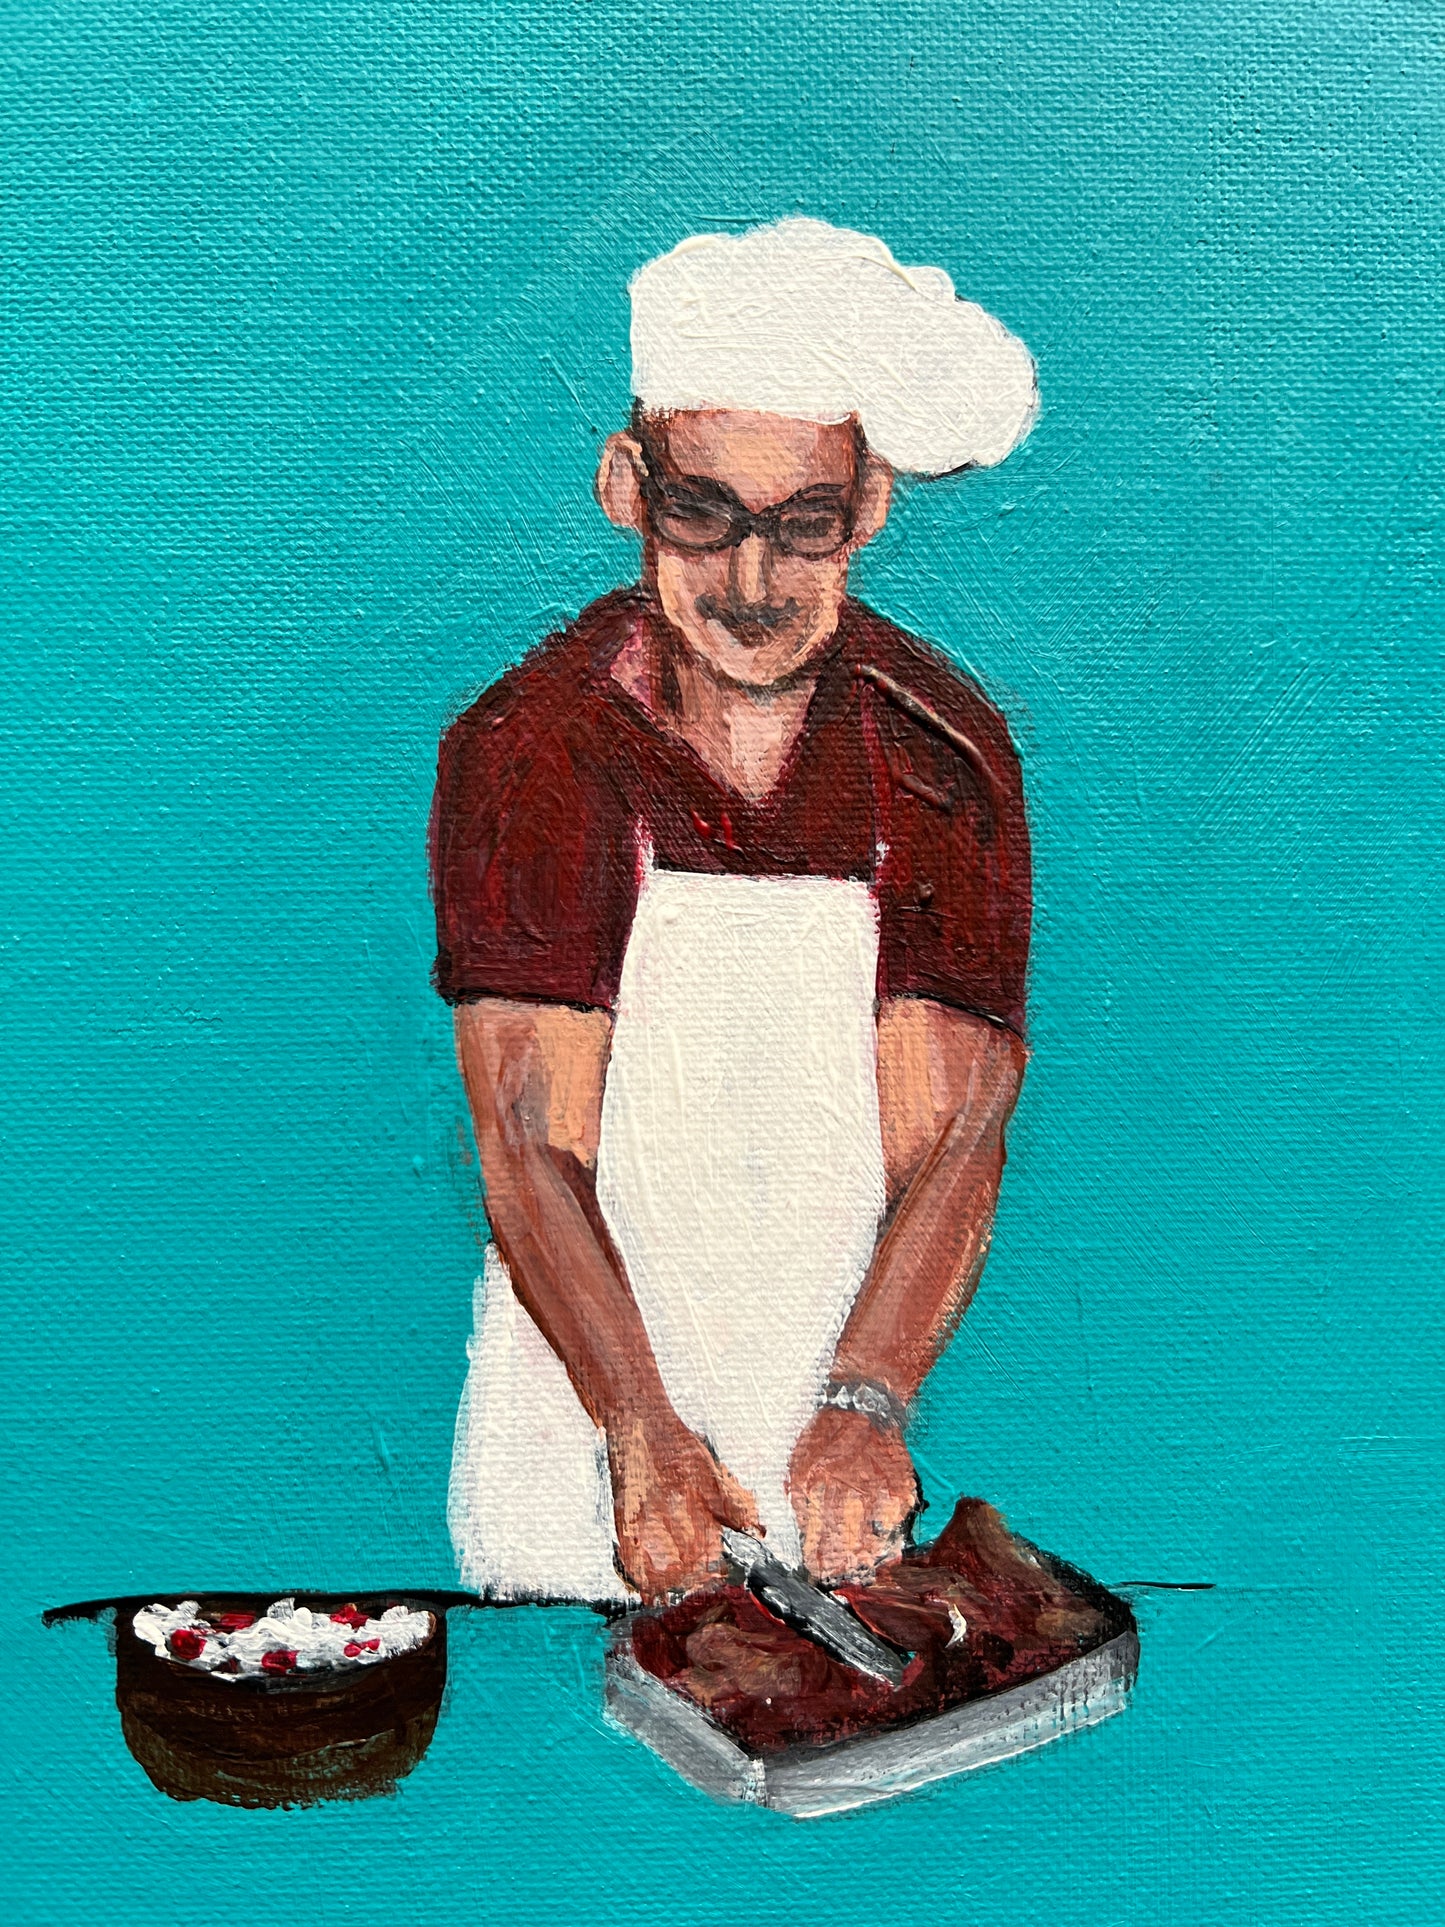 El Chef- The Chef